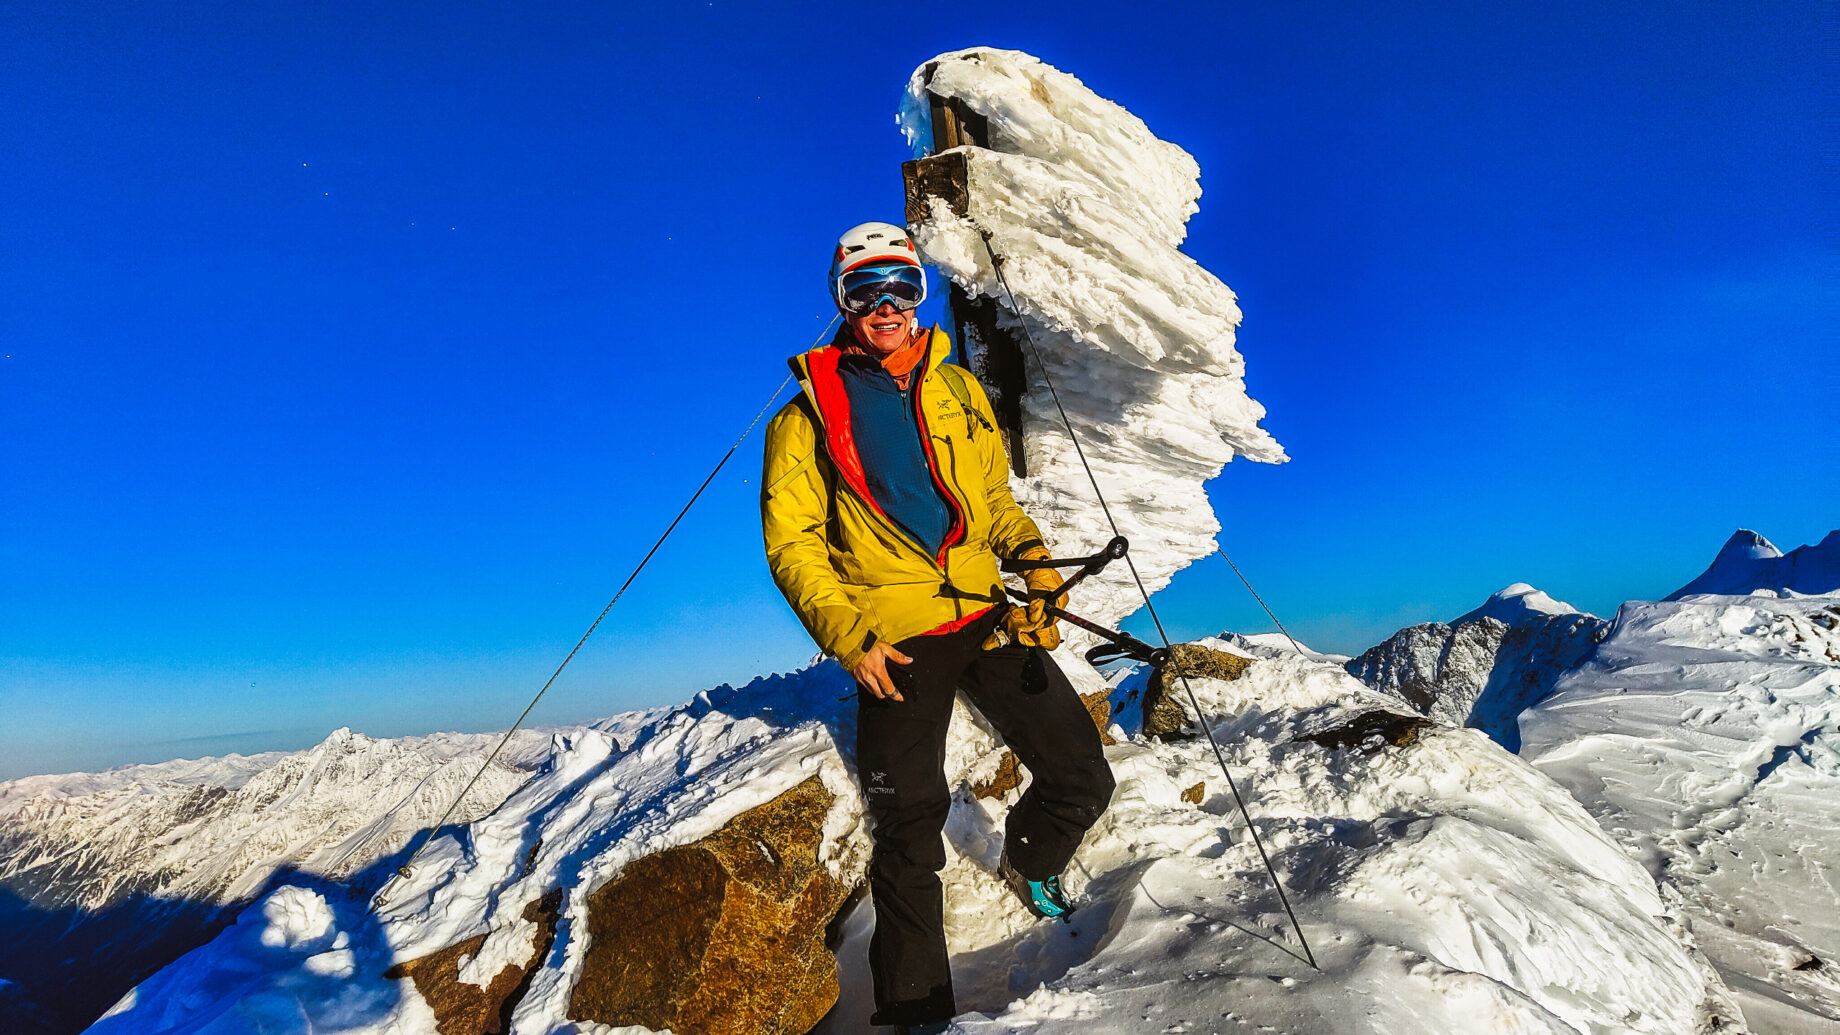 Am Gipfel der Schaufelspitze. Foto: Simon Widy